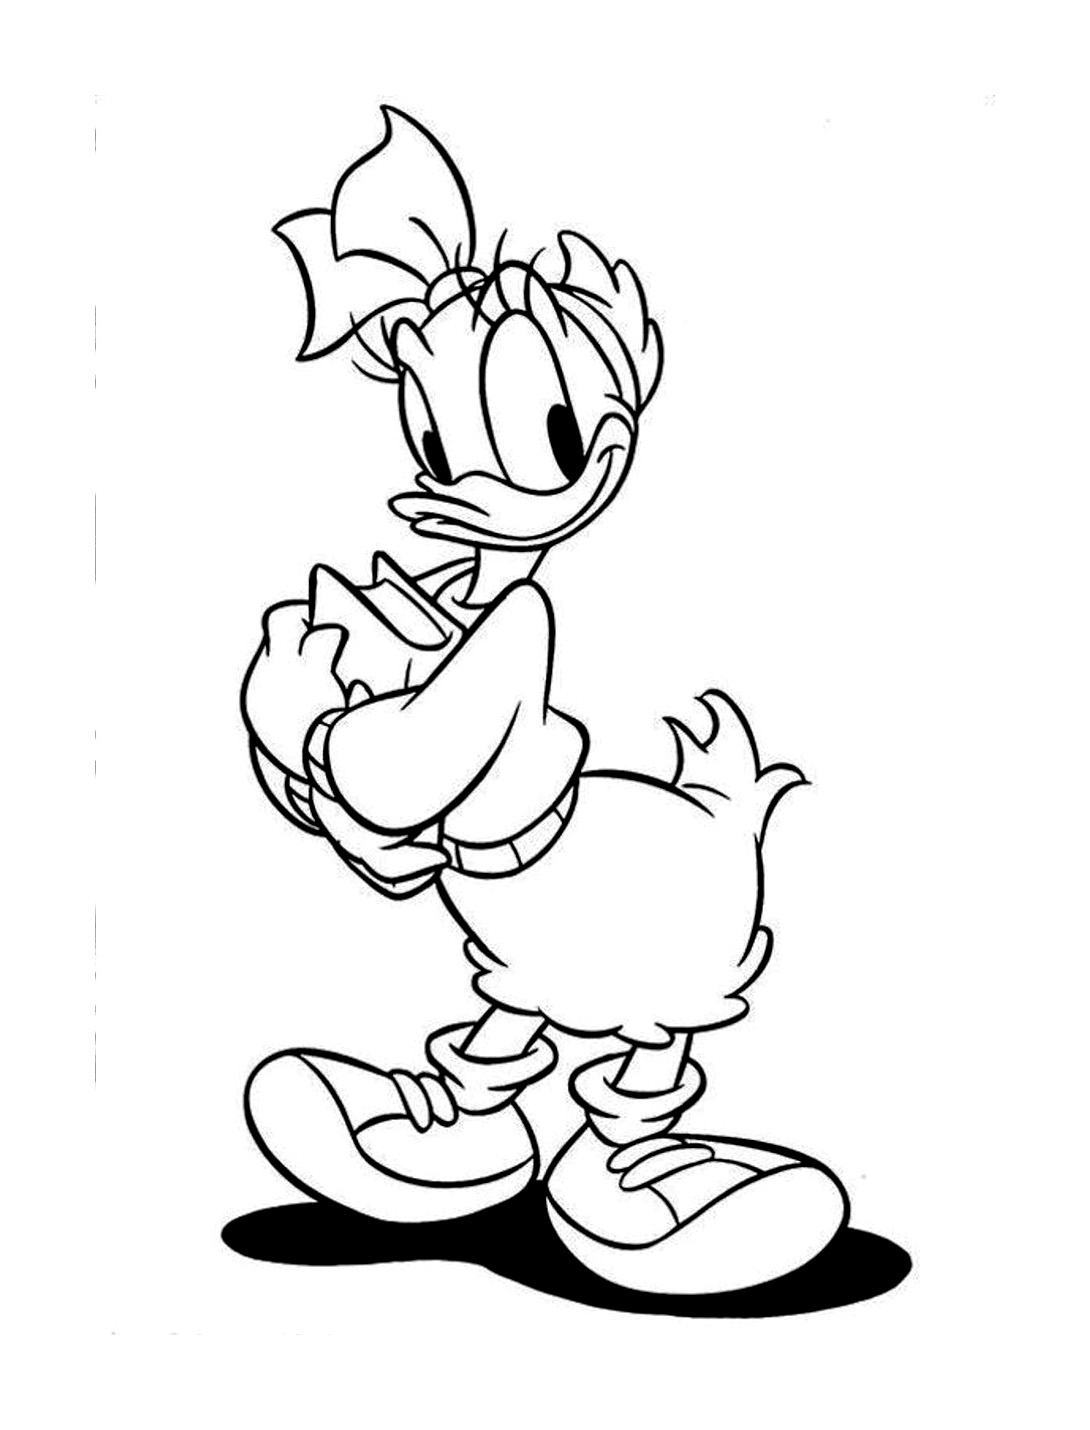 Donald Duck #234 (Dessins Animés) – Coloriages À Imprimer avec Coloriage A4 Imprimer Gratuit